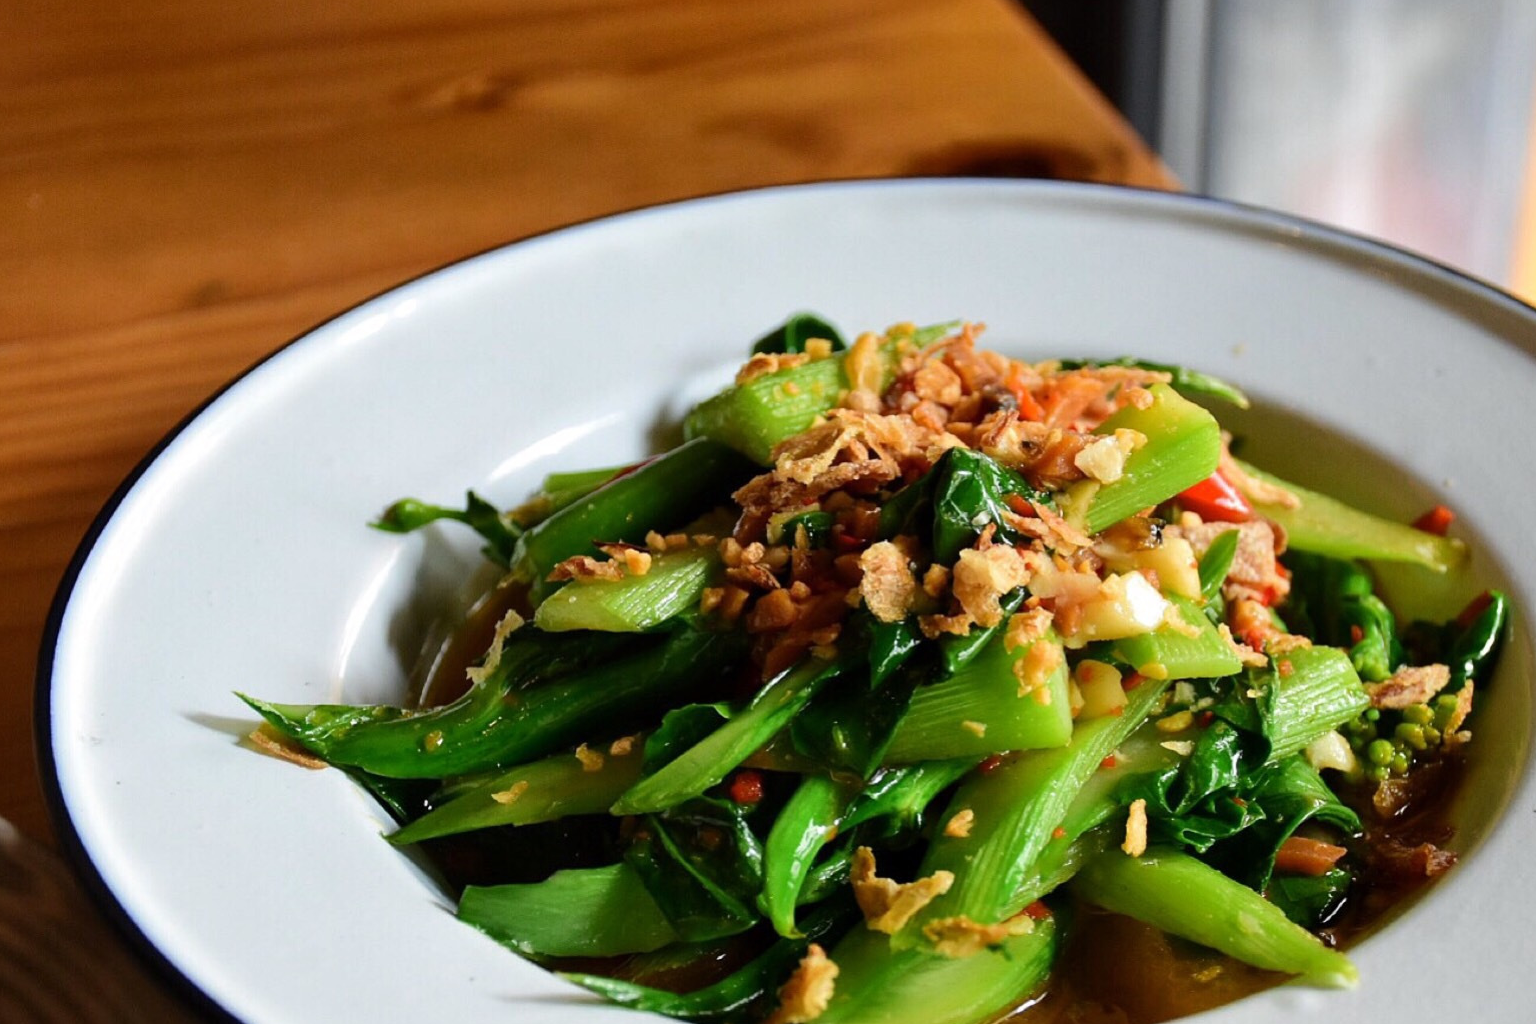 「咸鱼炒芥蓝」不知道为什么泰国的青菜都喜欢加一些虾酱,咸鱼干这类